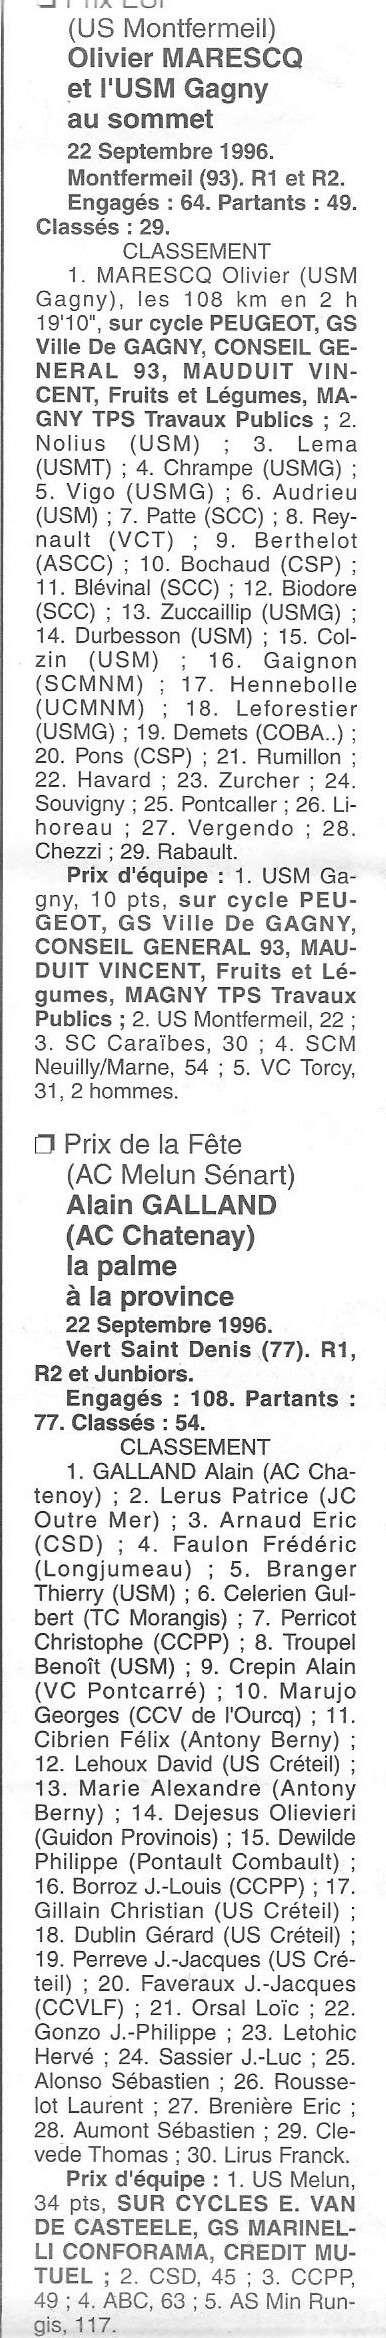 Coureurs et Clubs de Octobre 1993 à Septembre 1996 - Page 41 0_02028